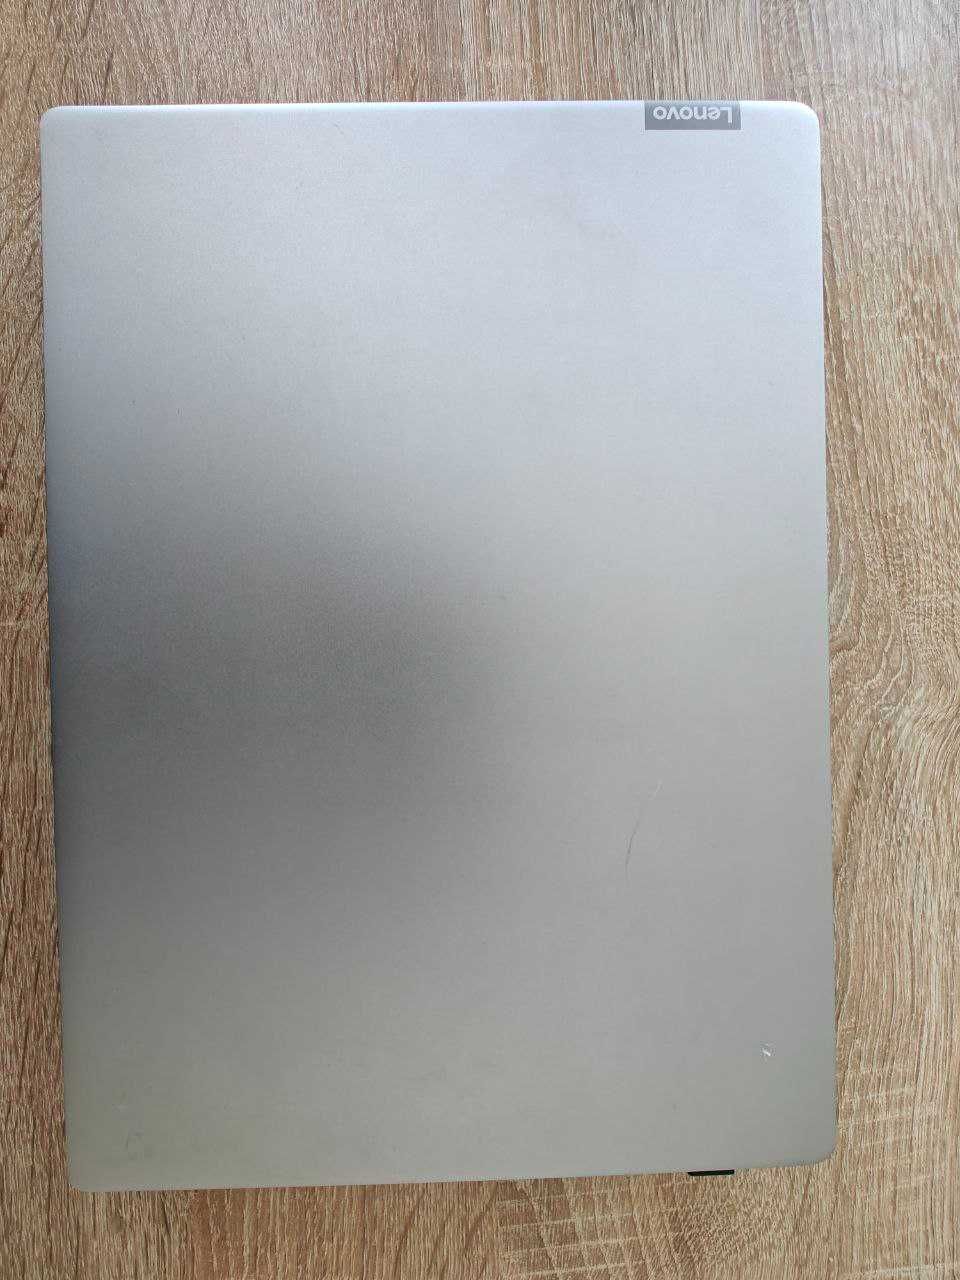 Ноутбук Lenovo IdeaPad 330S-14IKB